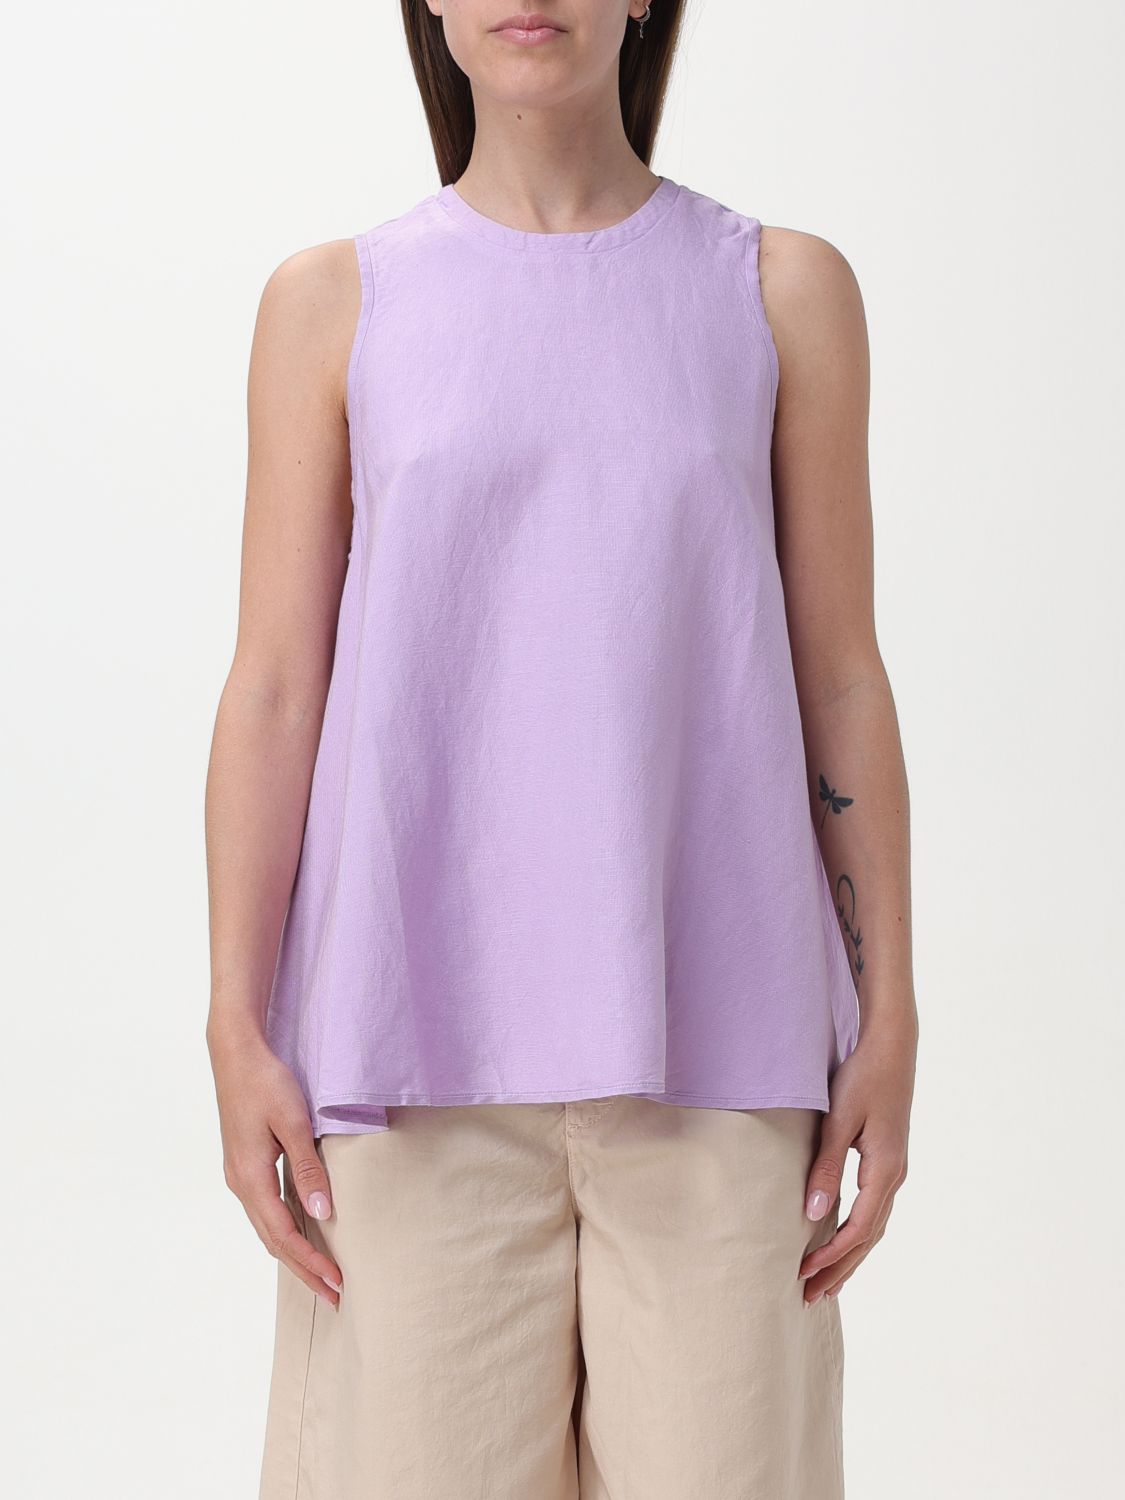 T恤 SUN 68 女士 颜色 淡紫色